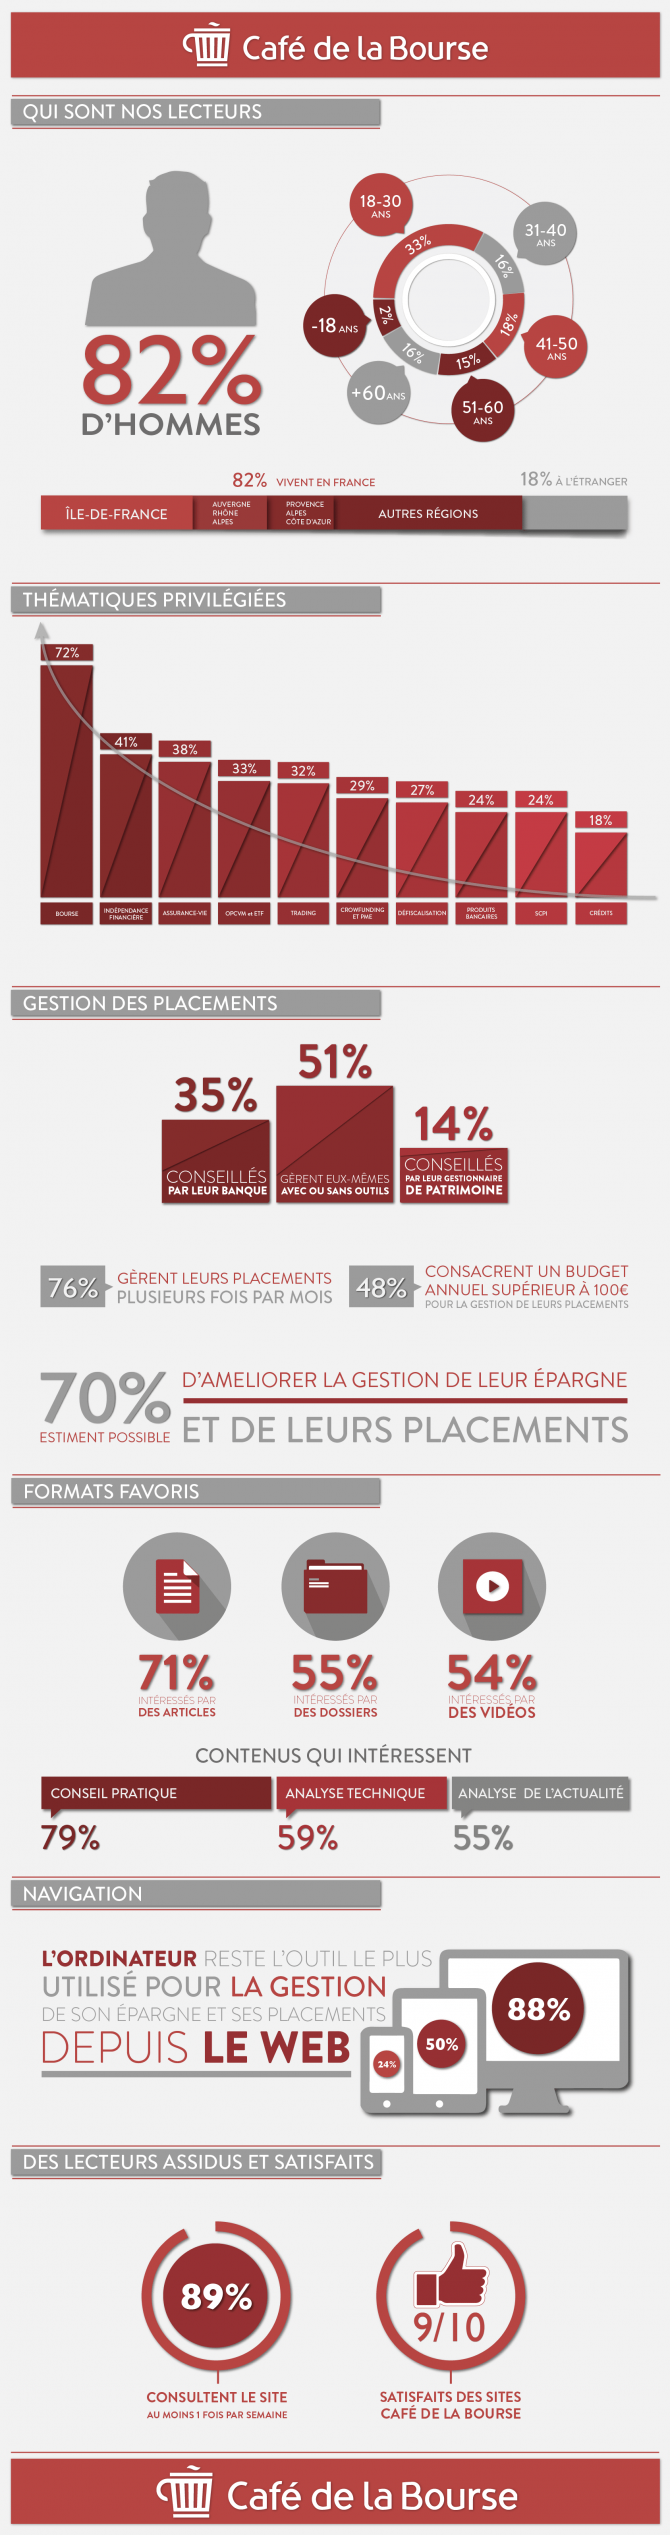 Infographie Bourse : les pratiques d’investissement des lecteurs de Café de la Bourse